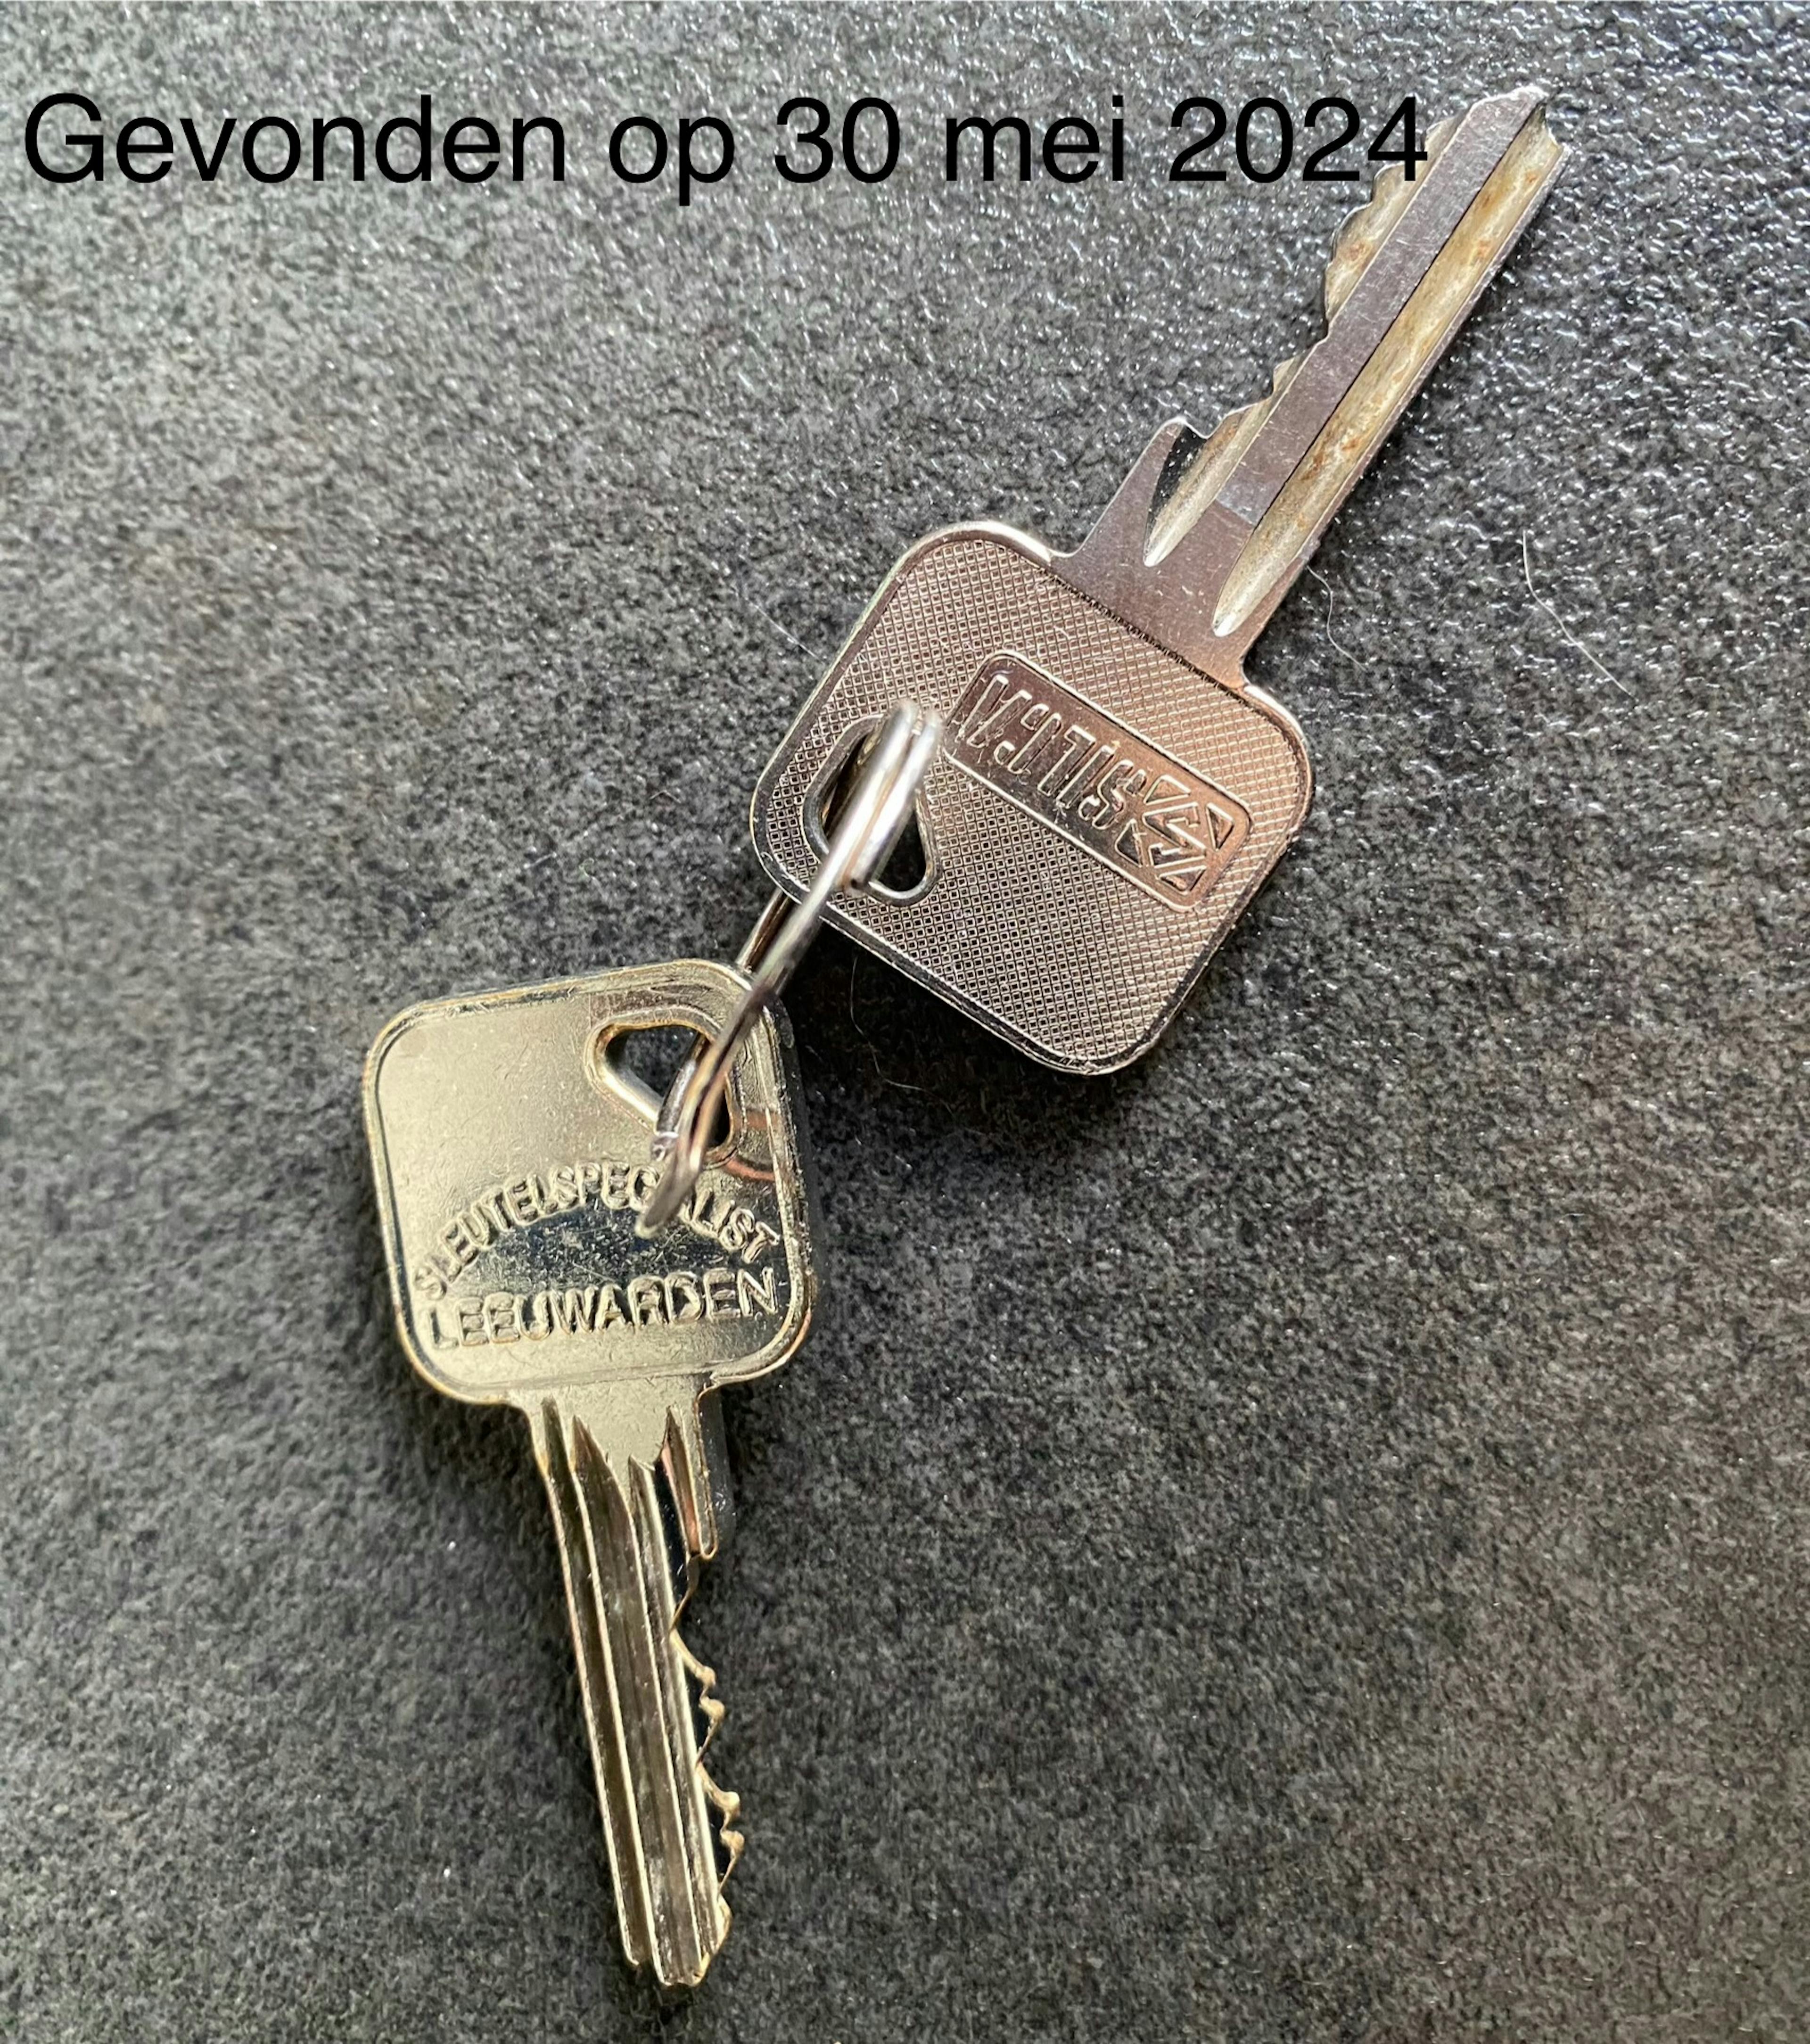 Twee sleutels waarvan 1 met opdruk sleutelspecialist Leeuwarden